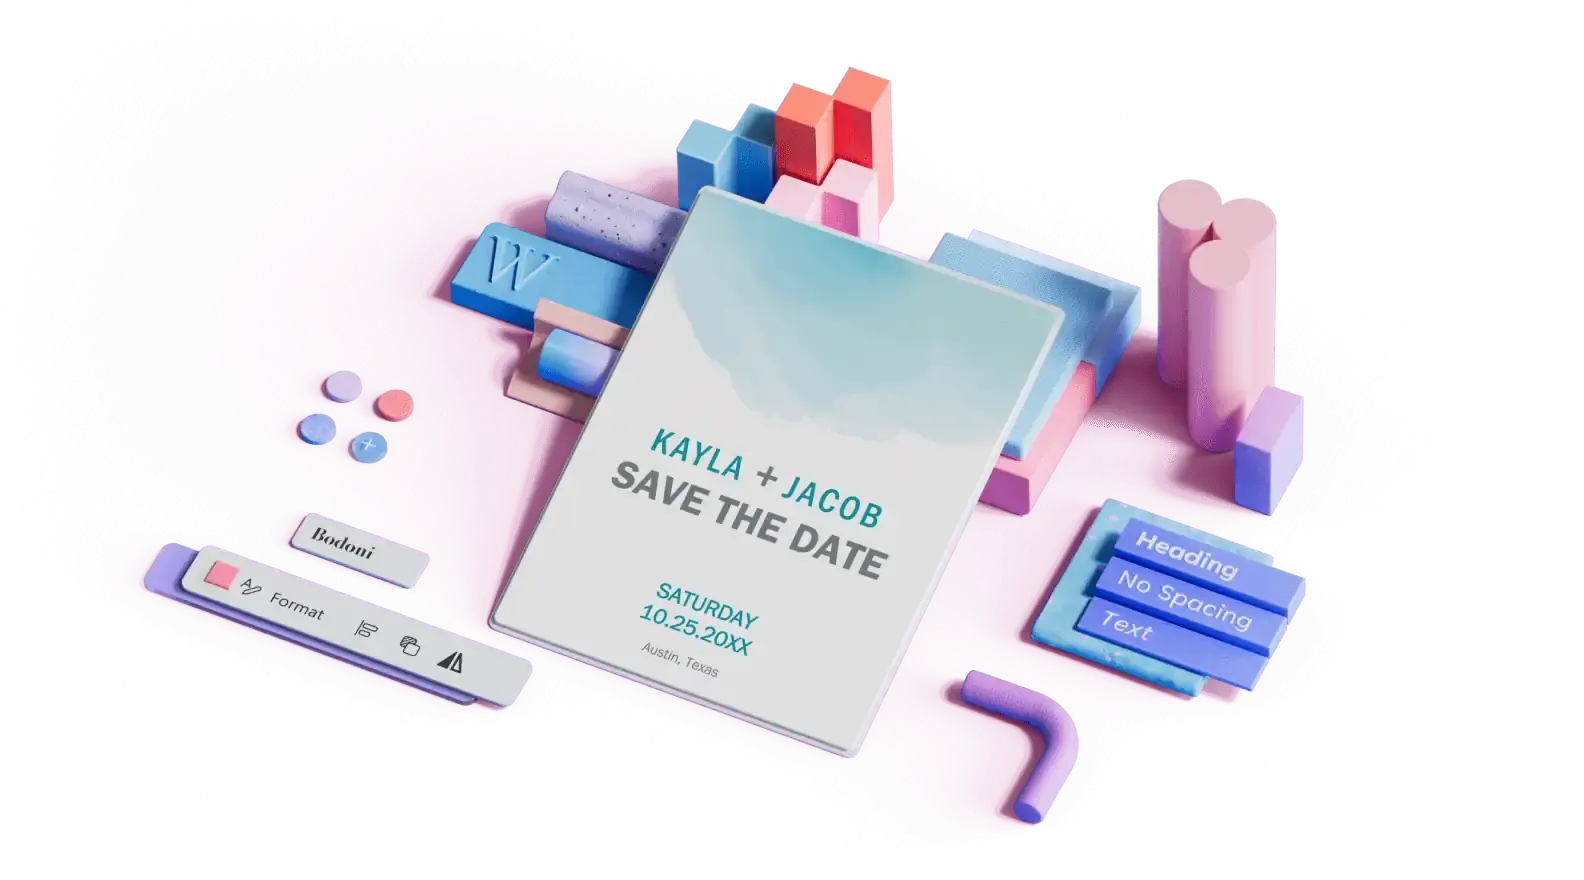 תבנית Save The Date של חתונה מוקפת ברכיבי עיצוב תלת-ממדיים